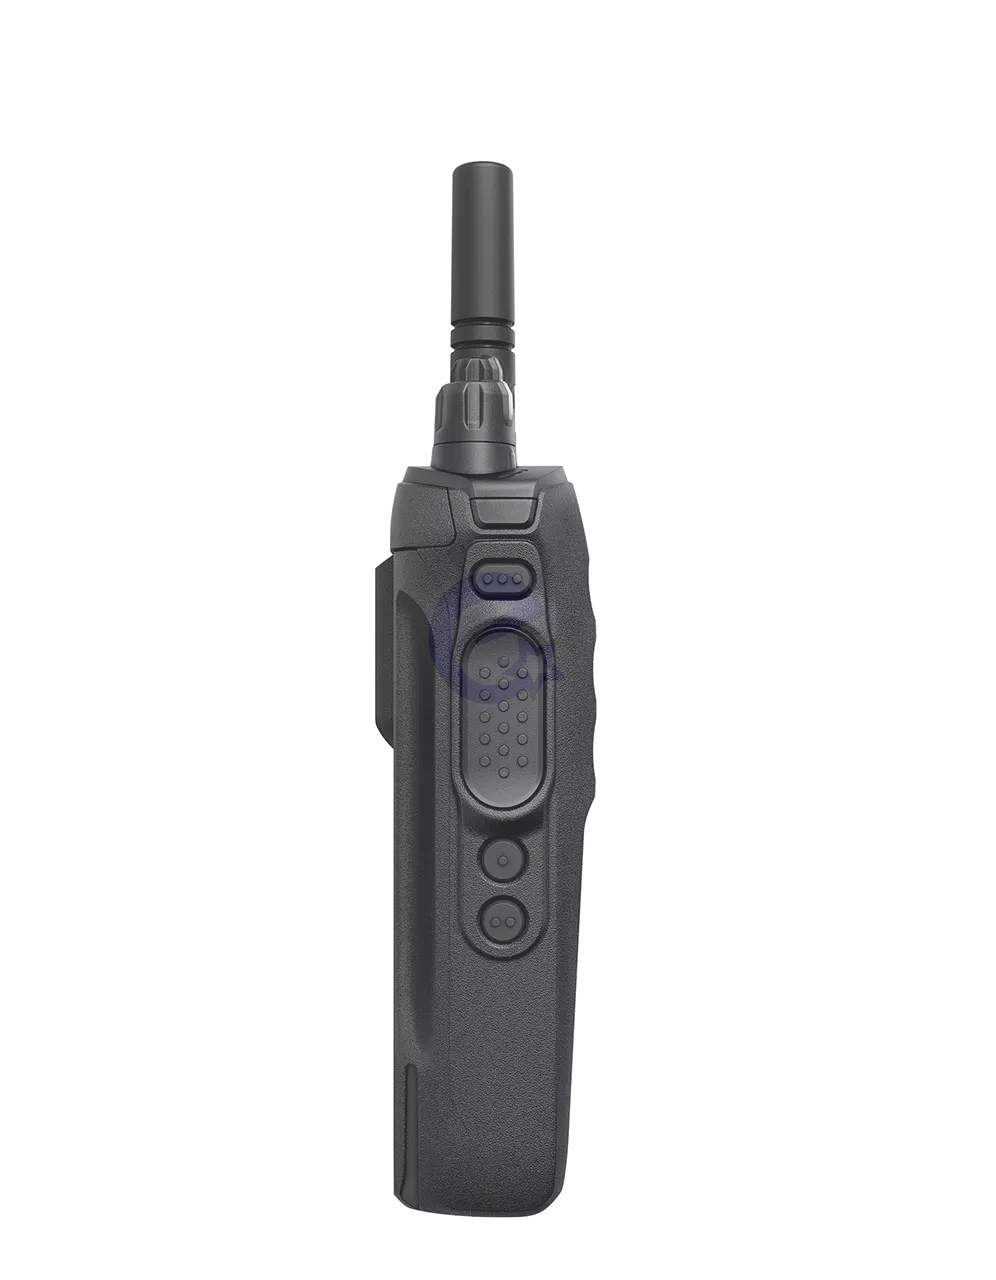 Рація Motorola MotoTRBO R7a VHF (136-174 МГц) Цифро-аналогова Black (Чорна)